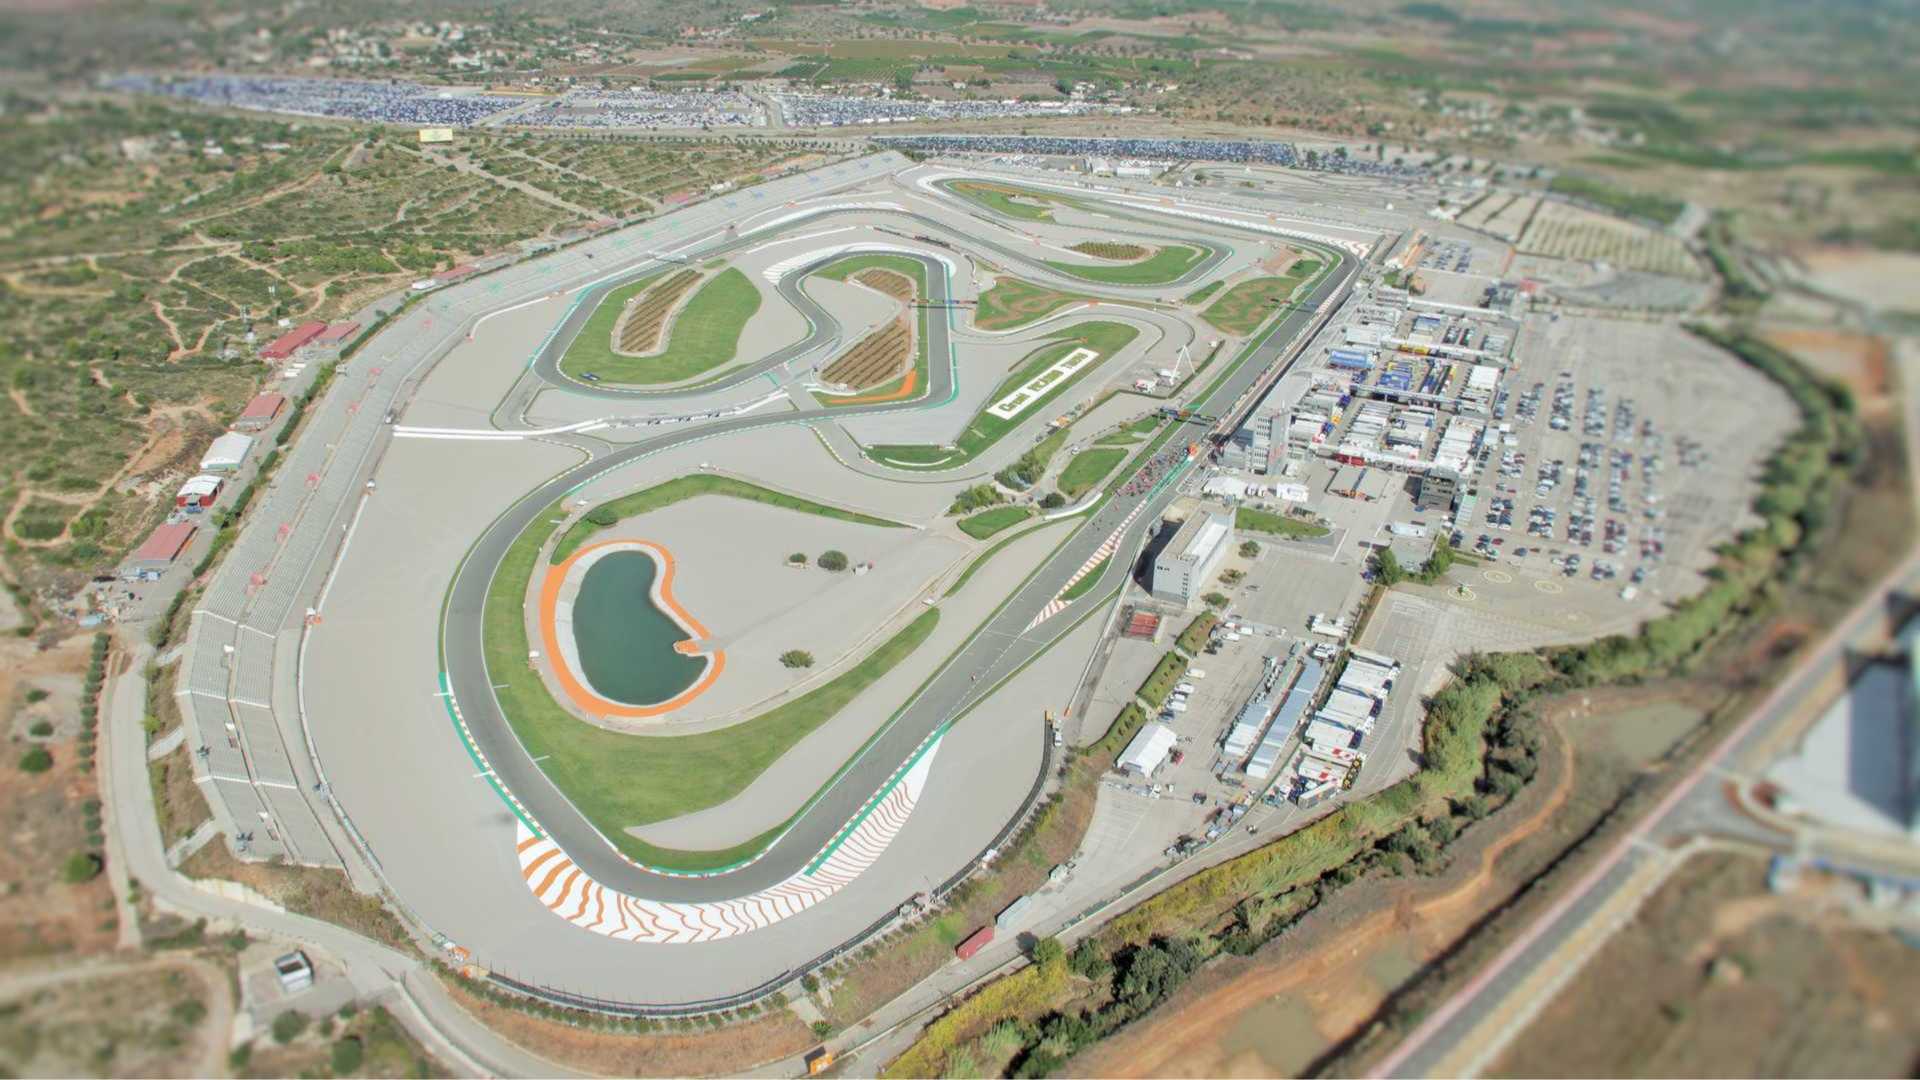 Imagen aérea del Circuito Ricardo Torno ubicado en Cheste, en la Comunitad Valenciana